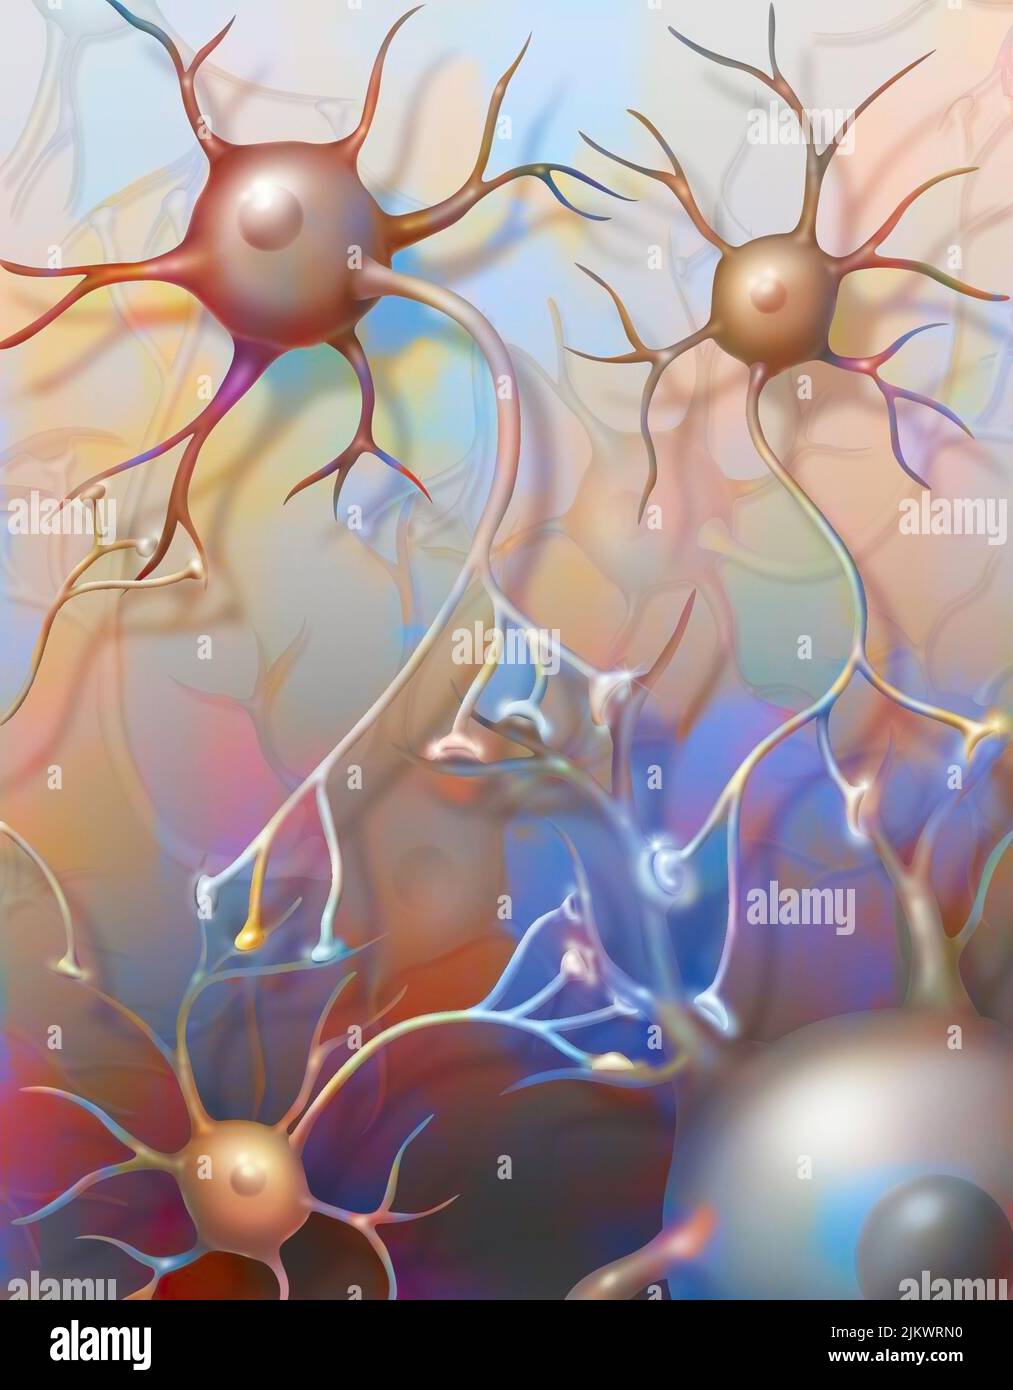 Neuronas conectadas que muestran la transmisión de impulsos nerviosos. Foto de stock